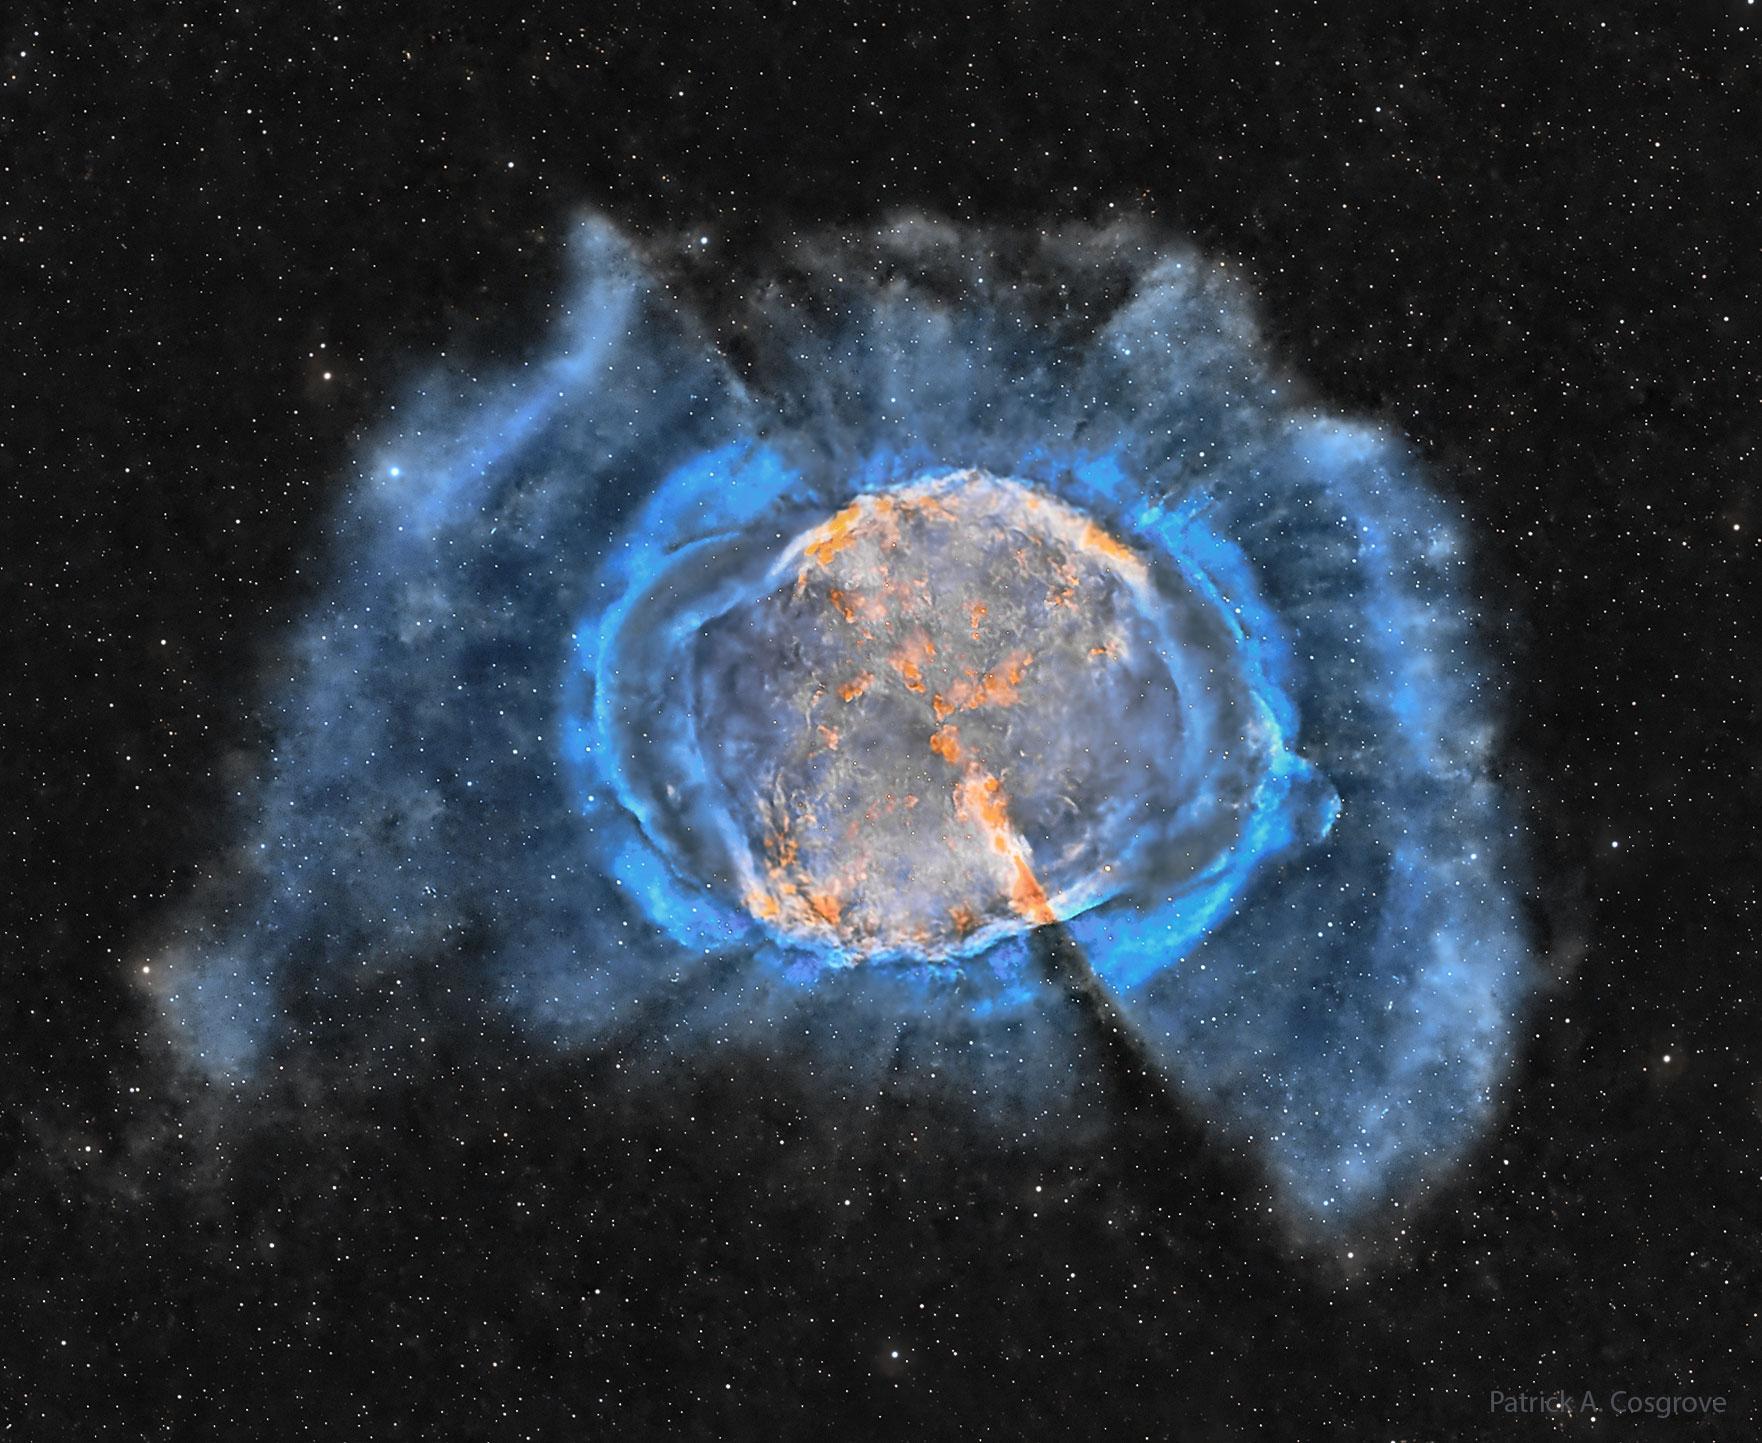 سحابة غاز بينجمي متوسّعة مع داخل برتقاليّ وخيوط زرقاء خارجيّة. تُرى العديد من النجوم في الخلفيّة المُظلمة.